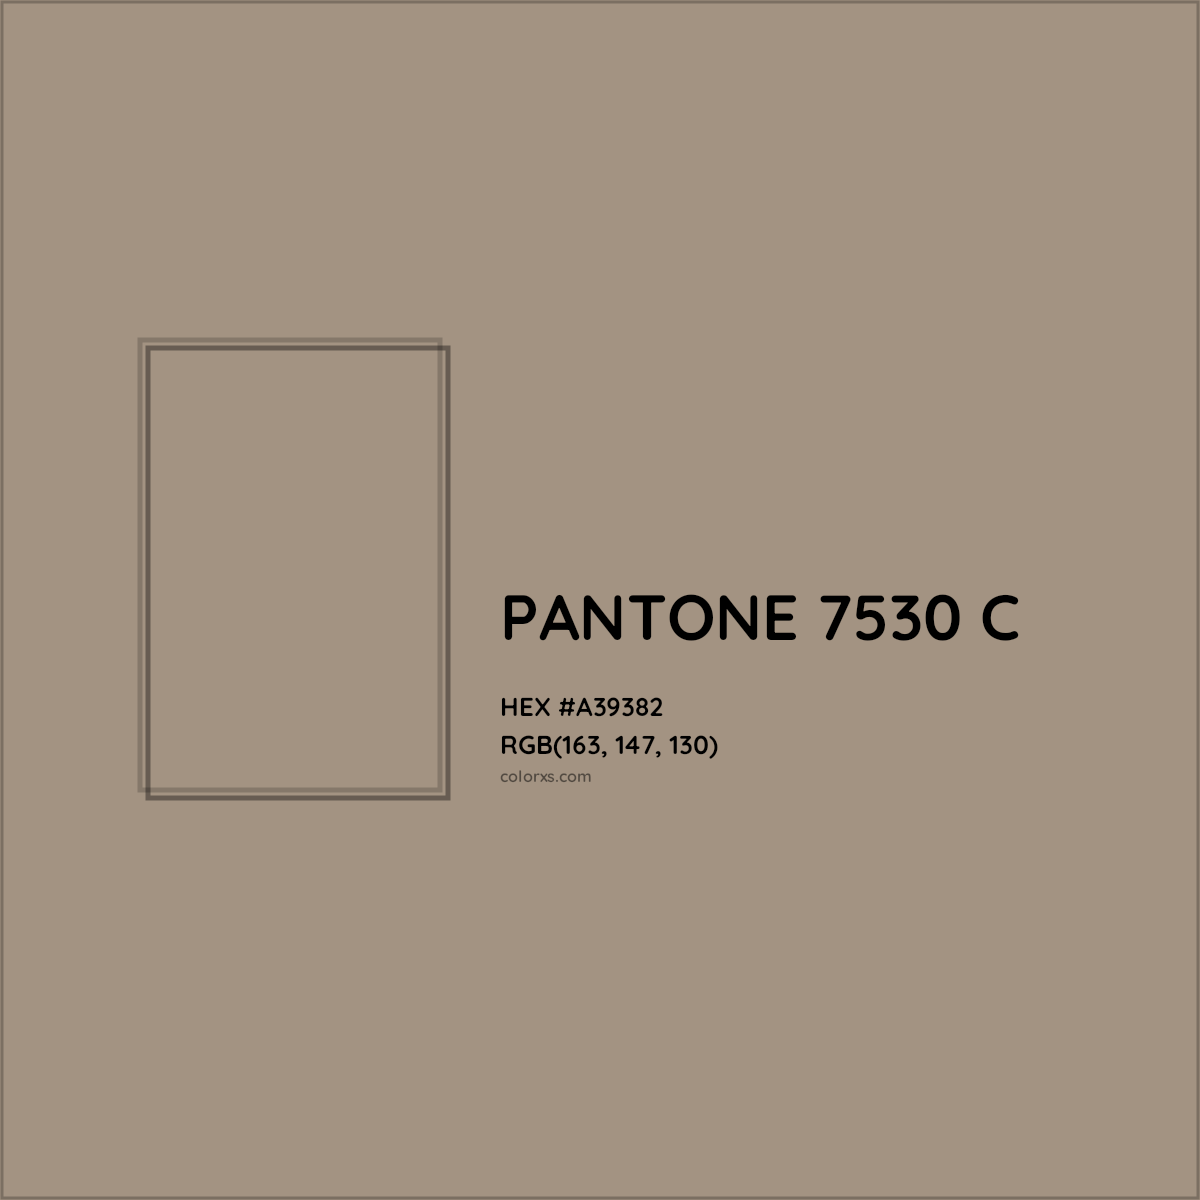 HEX #A39382 PANTONE 7530 C CMS Pantone PMS - Color Code